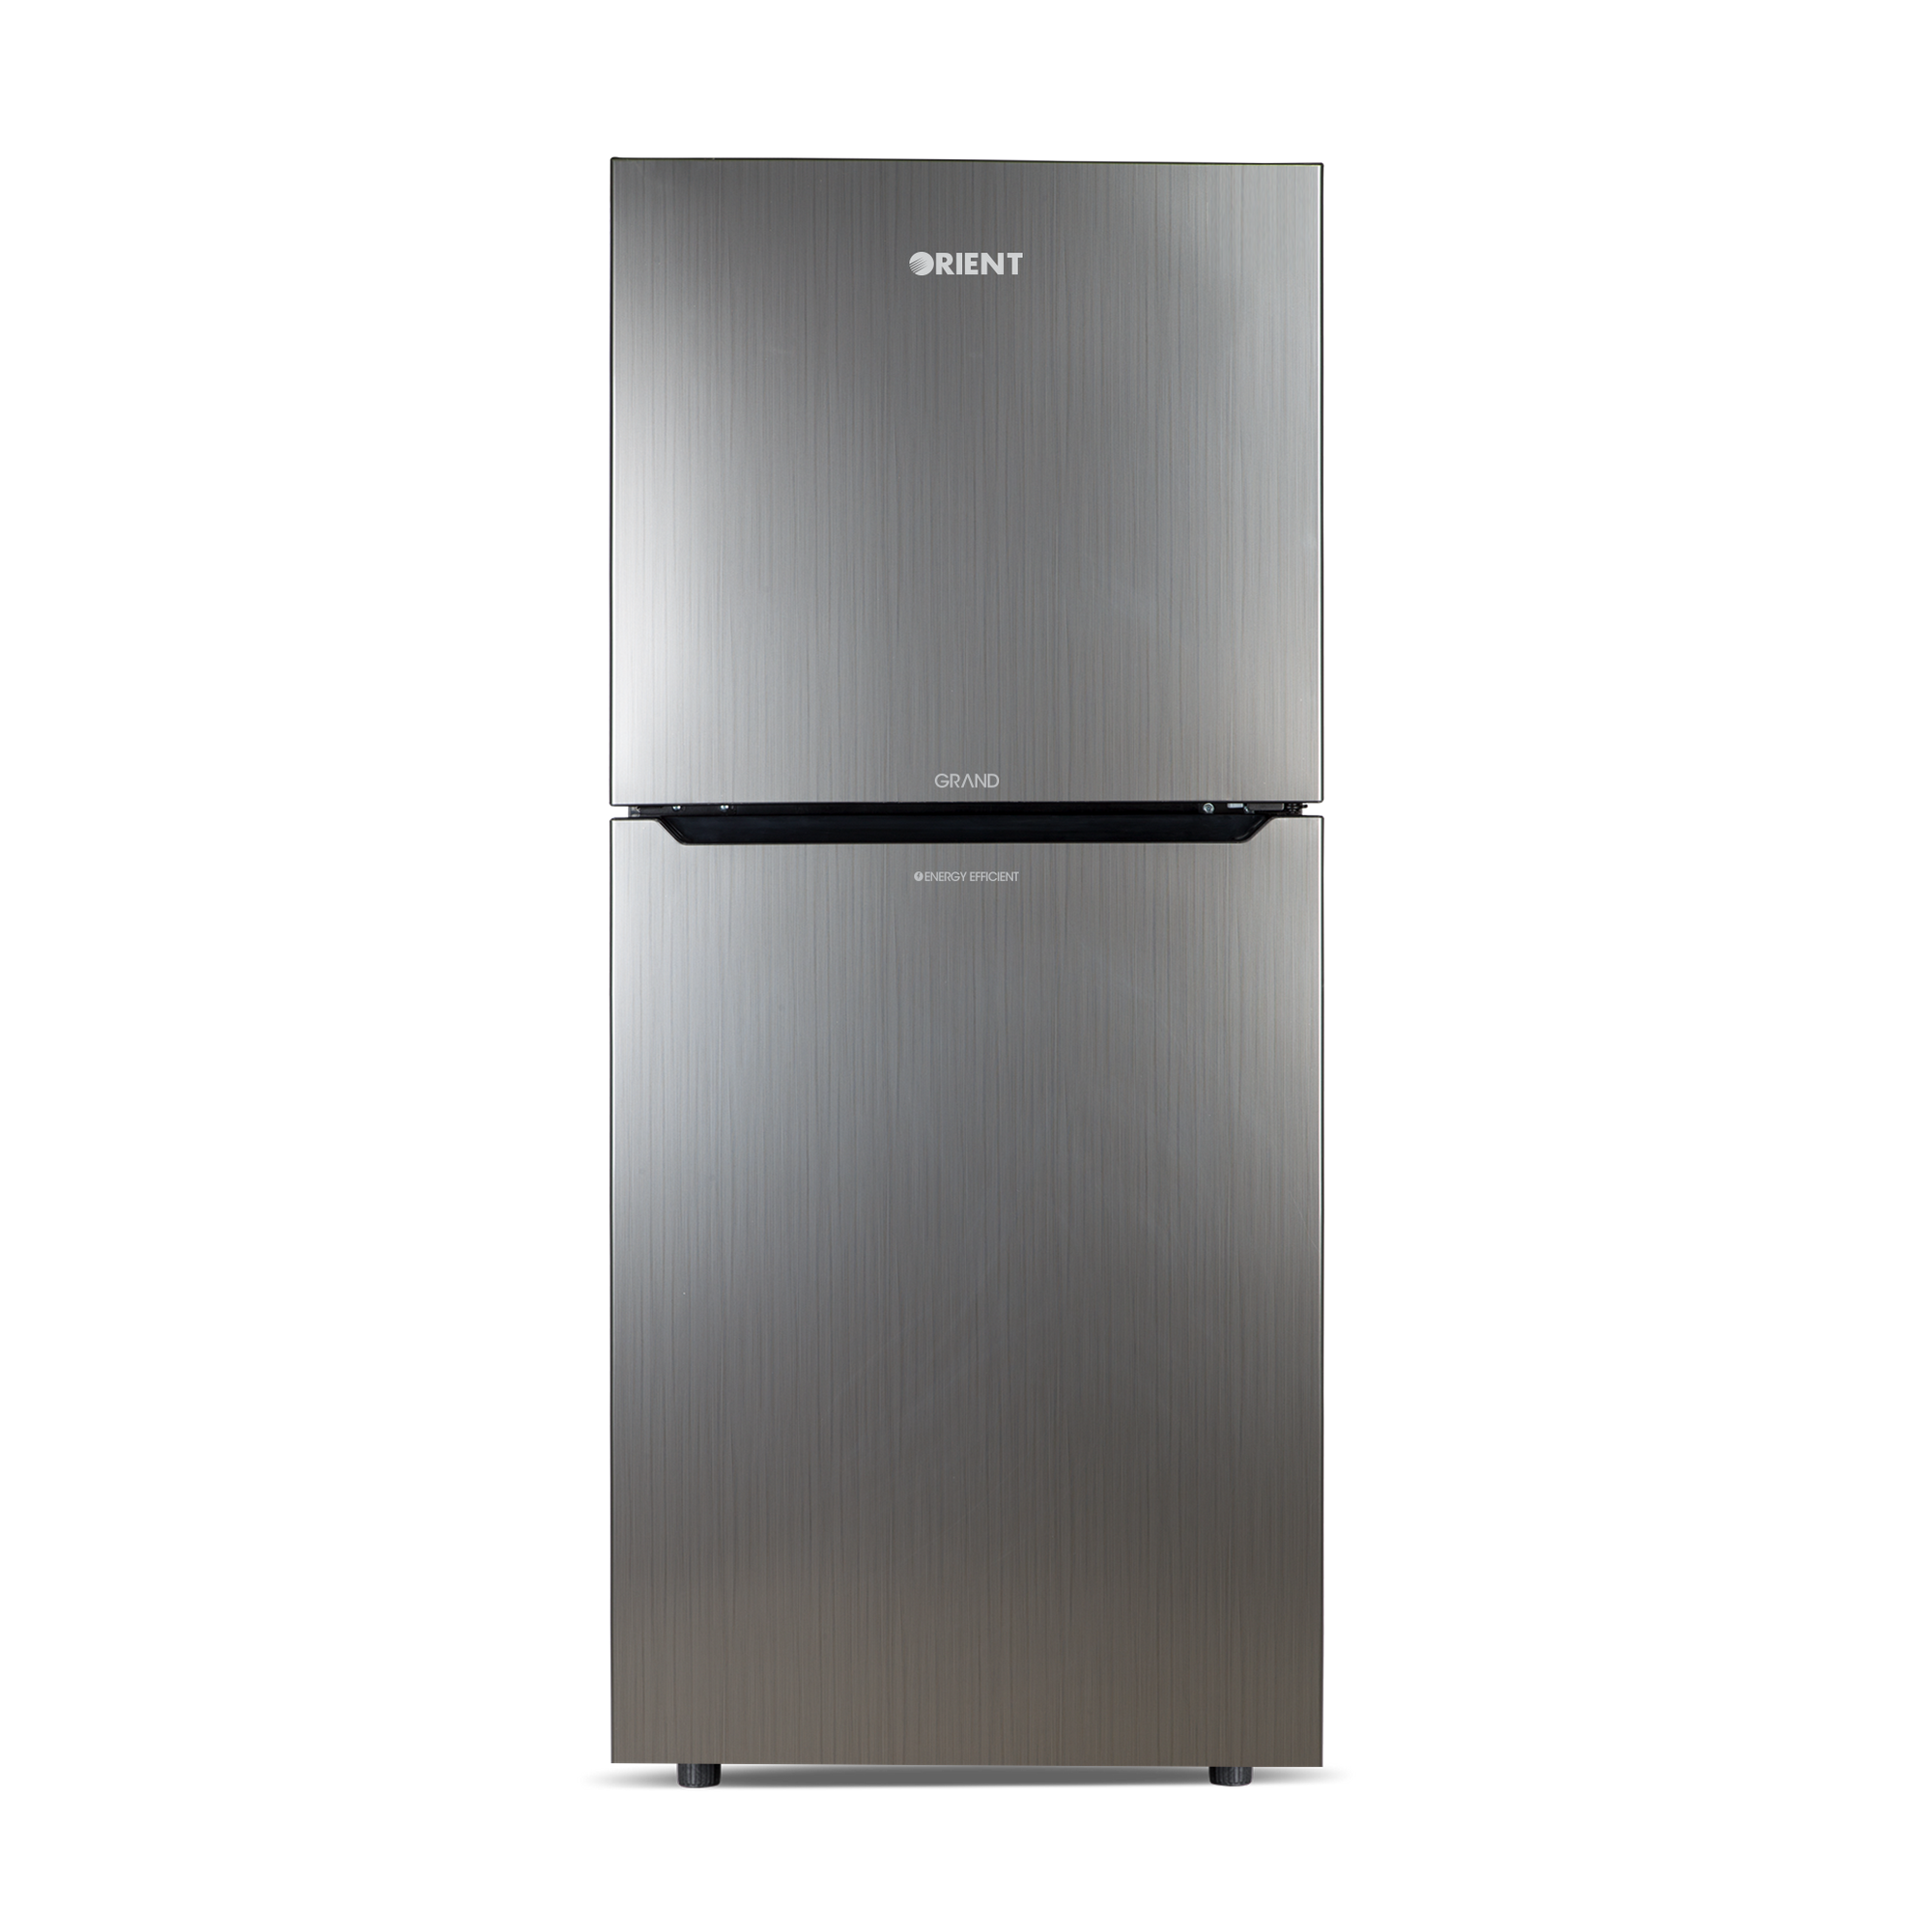 Orient Refrigerator Double Door - 475H Grand VCM - Jumbo Freezer